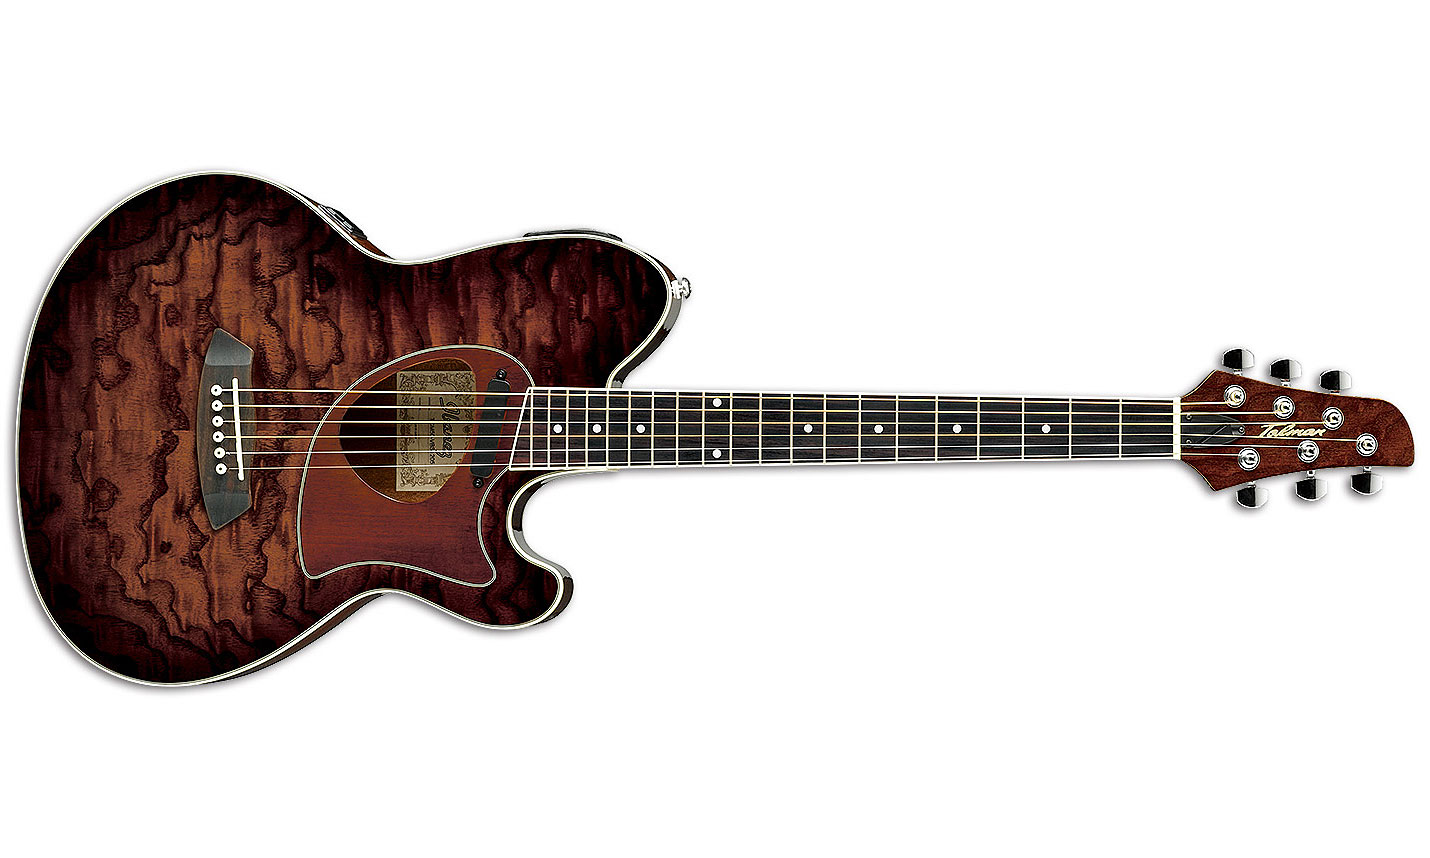 Ibanez Tcm50 Vbs Talman Cw Frene Sapele Pur - Vintage Brown Sunburst - Guitare Electro Acoustique - Variation 1